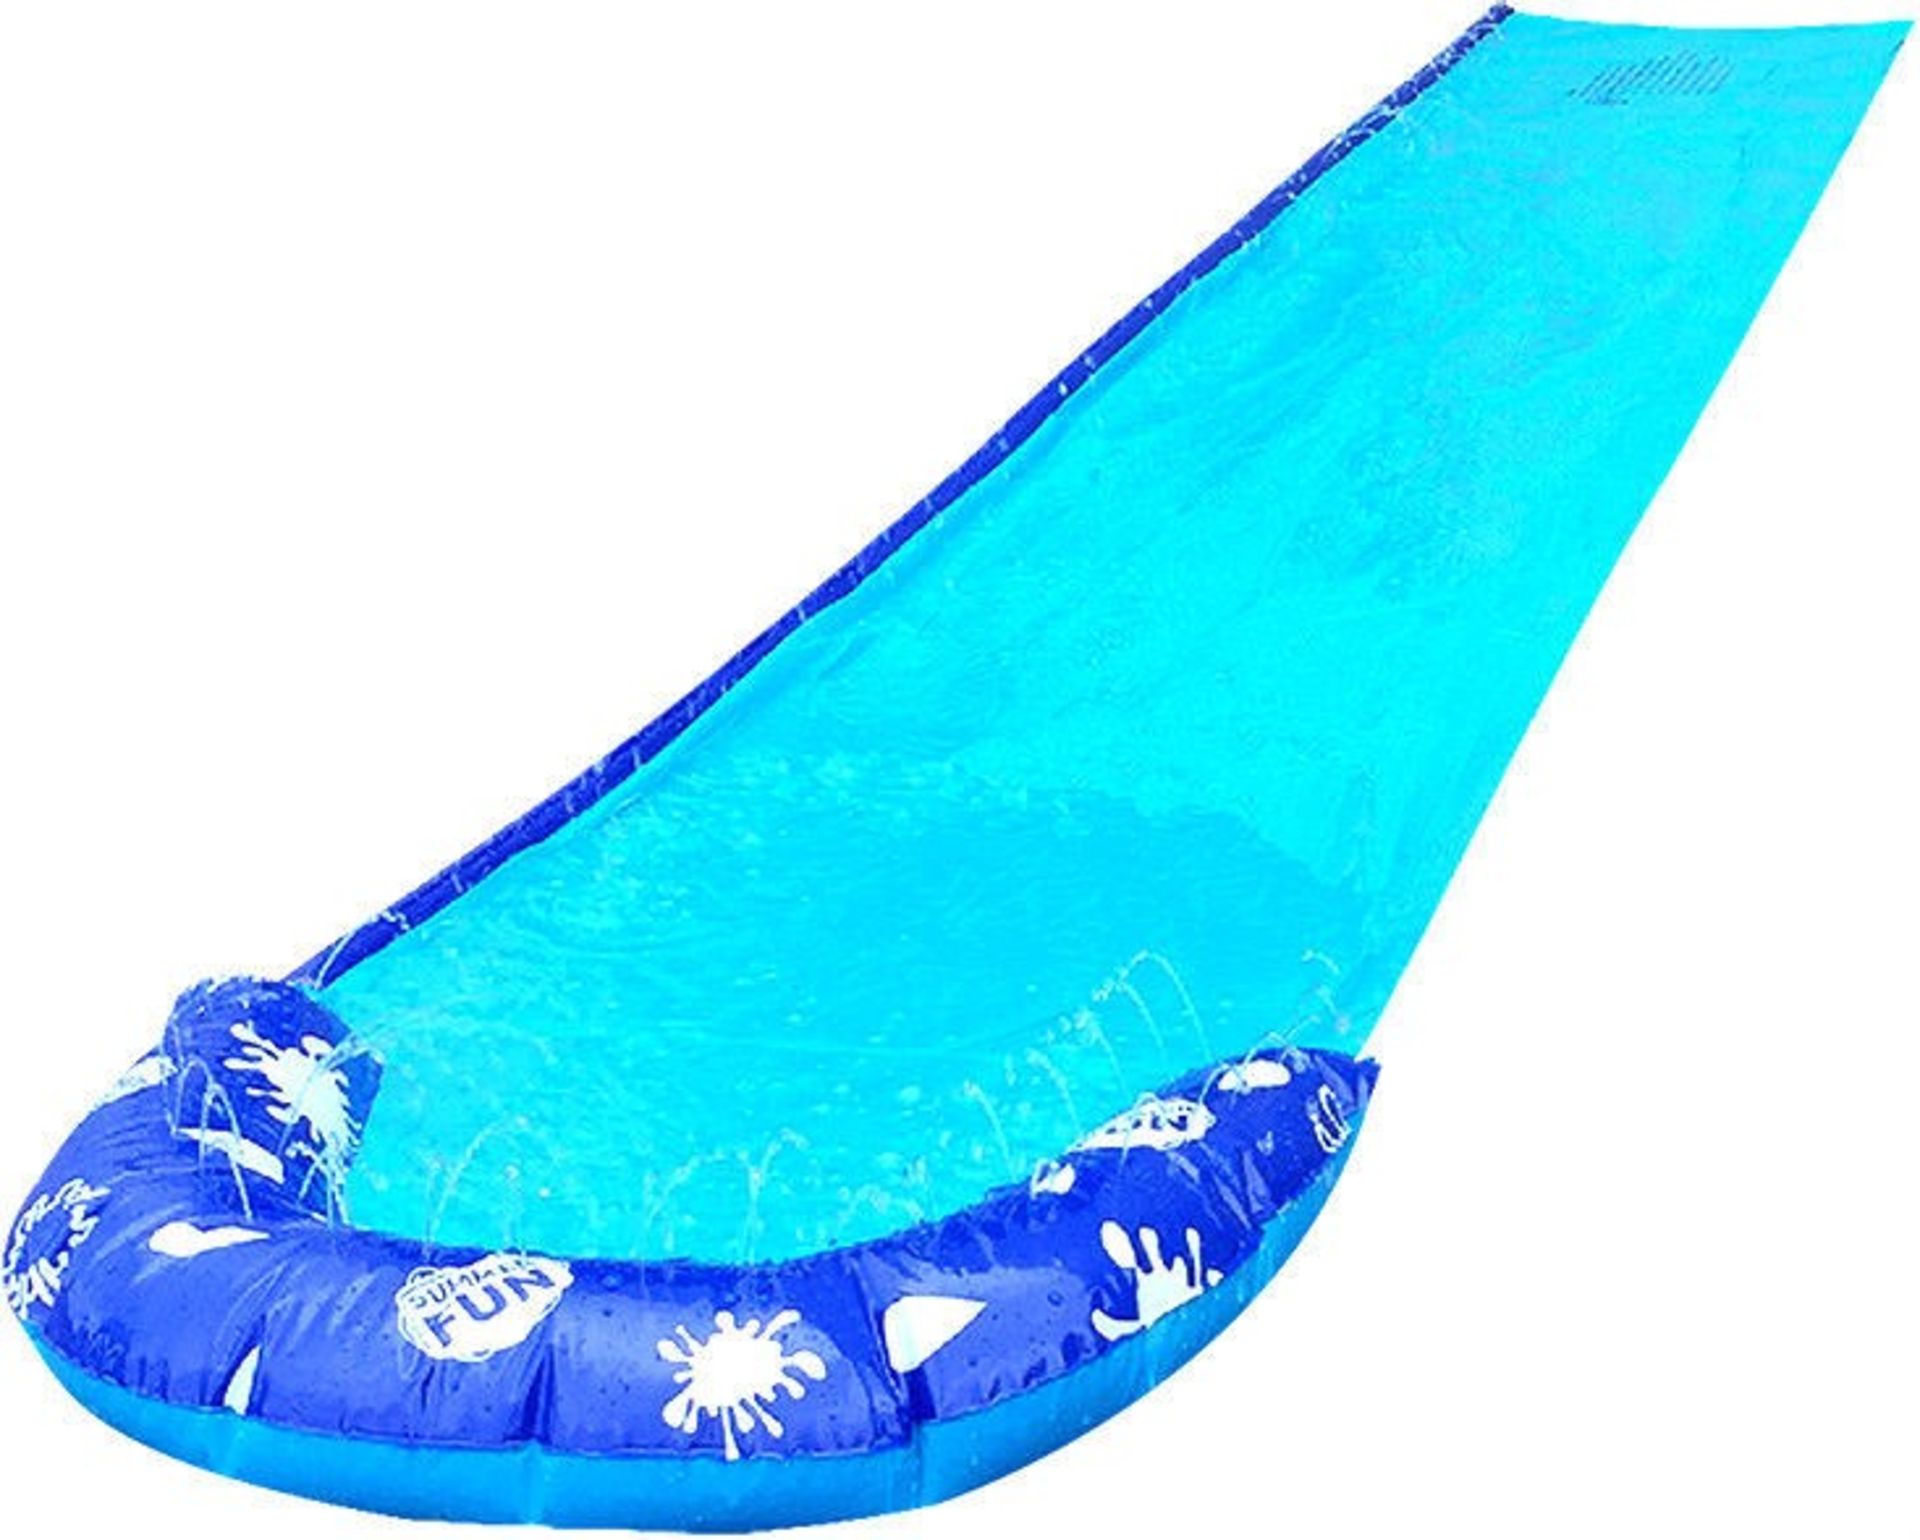 1 x "Aqua-Slider" 16ft Water Slide - Garden Slip-n-Slide Inflatable Toy - Brand New & Boxed - - Image 4 of 4